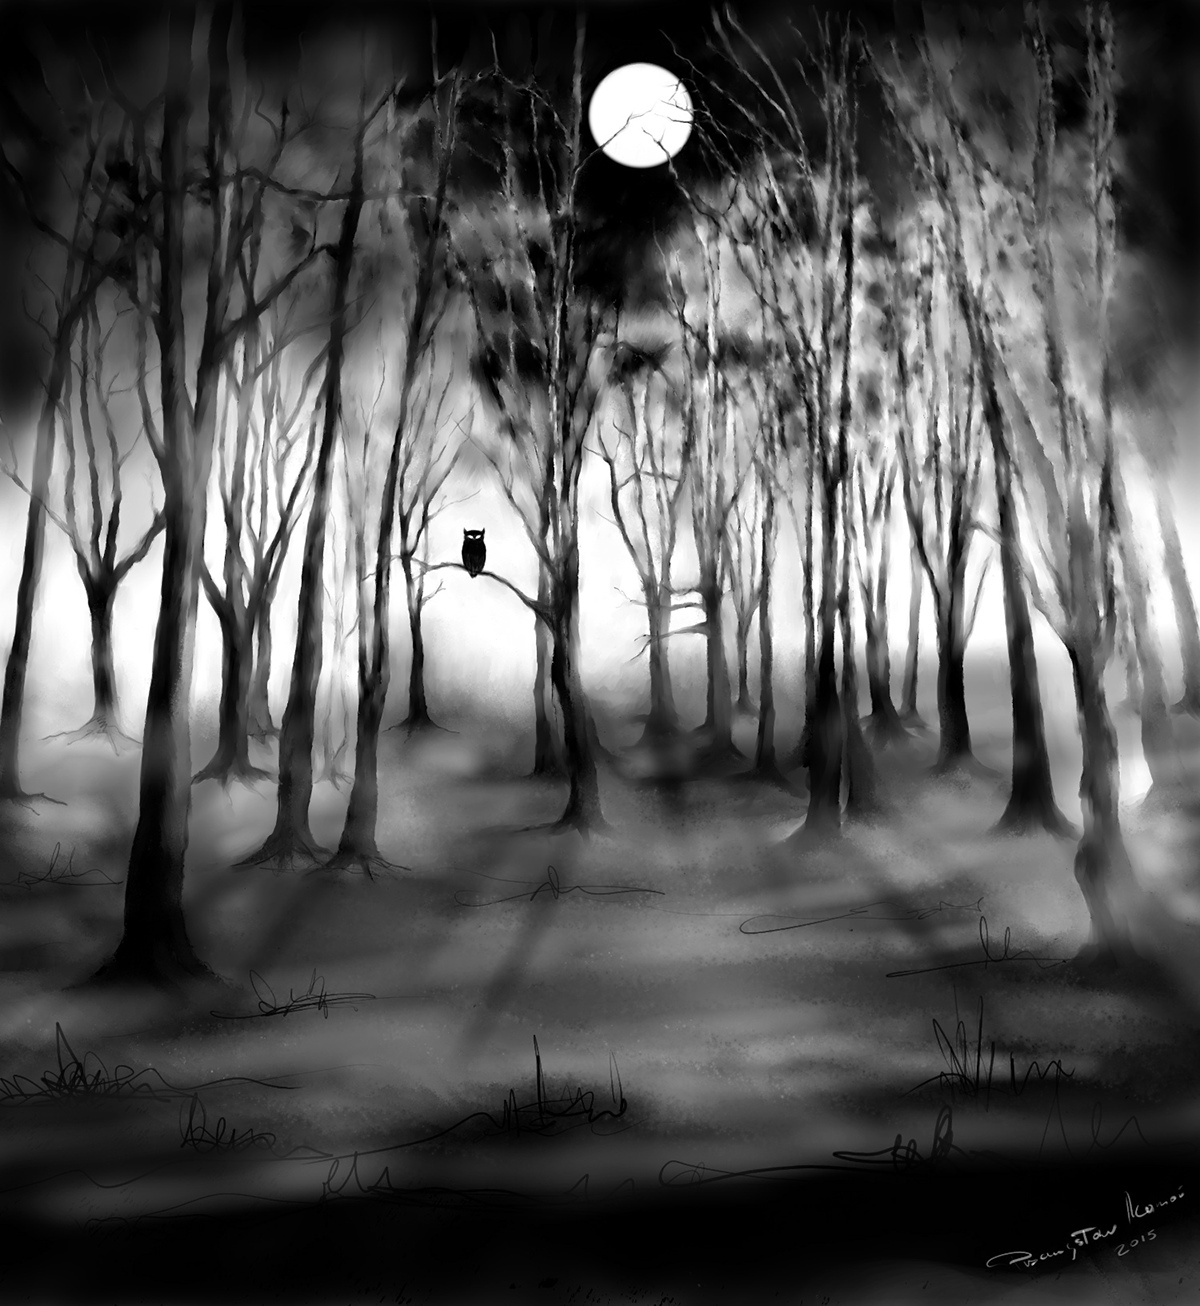 movie twin peaks owl David Lynch trees fog mystery Eire horror night moon woodland wood forest